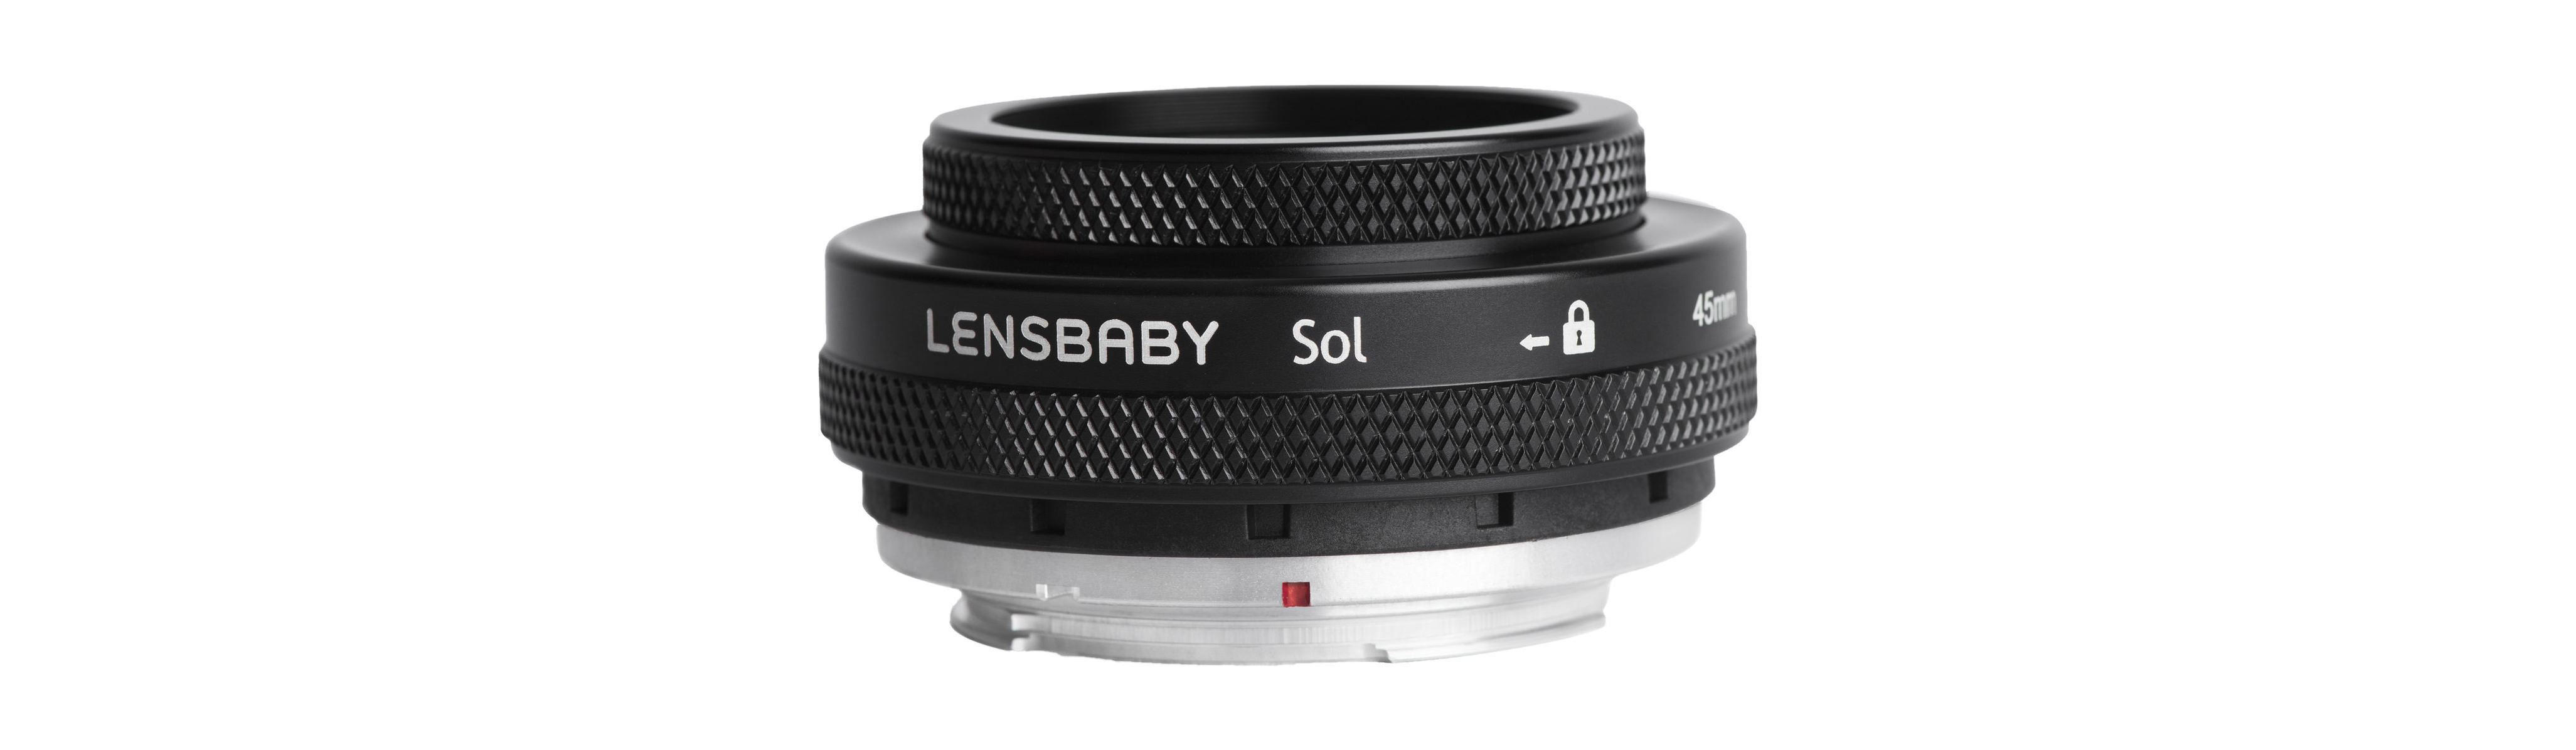 Đang tải Lensbaby-Sol-6.jpg…